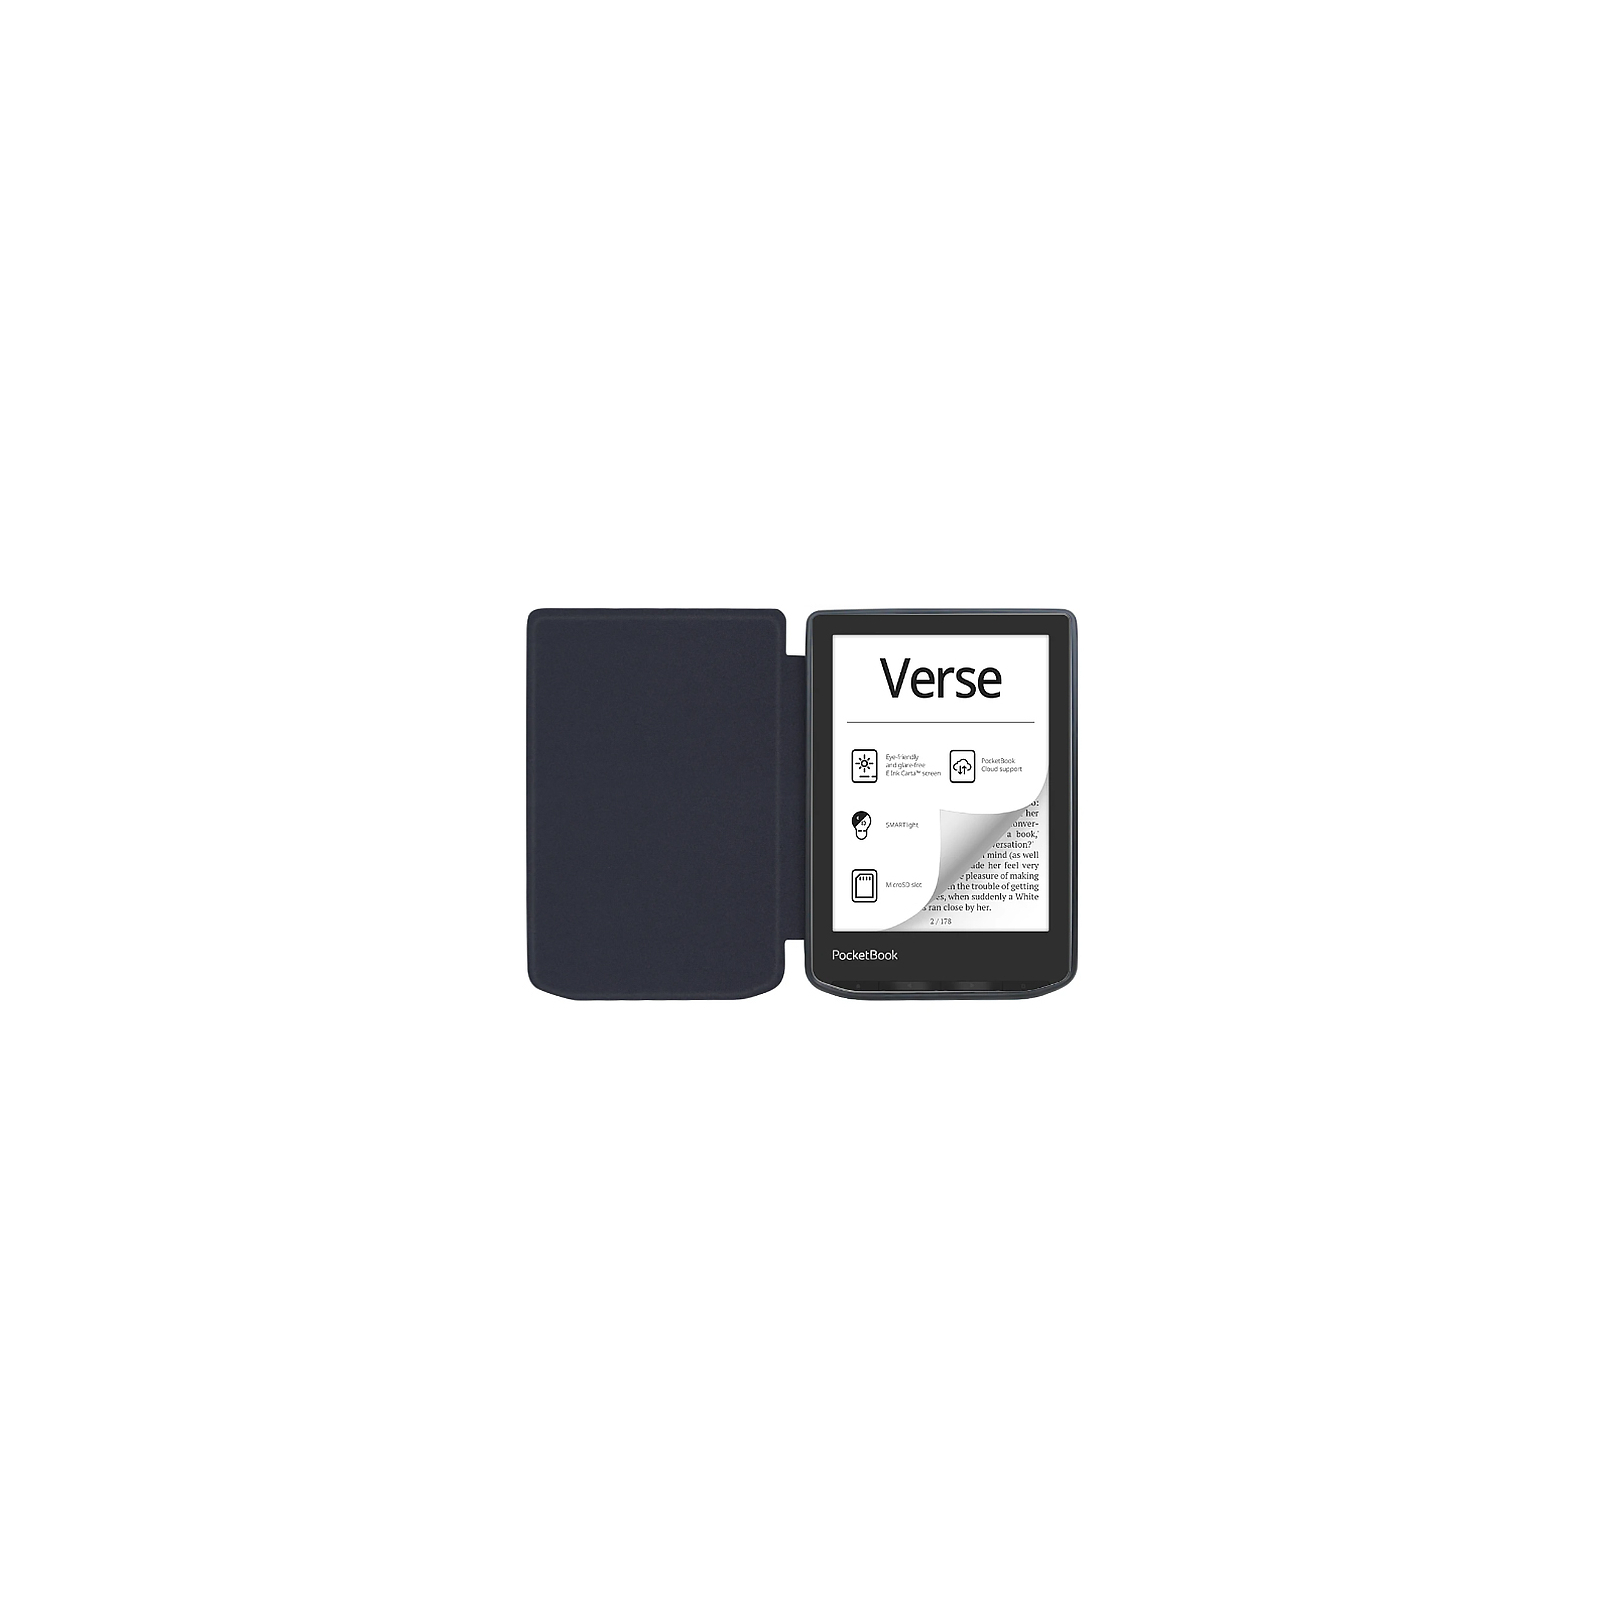 Чехол для электронной книги BeCover Smart Case PocketBook 629 Verse / 634 Verse Pro 6" Spring (710981) изображение 7